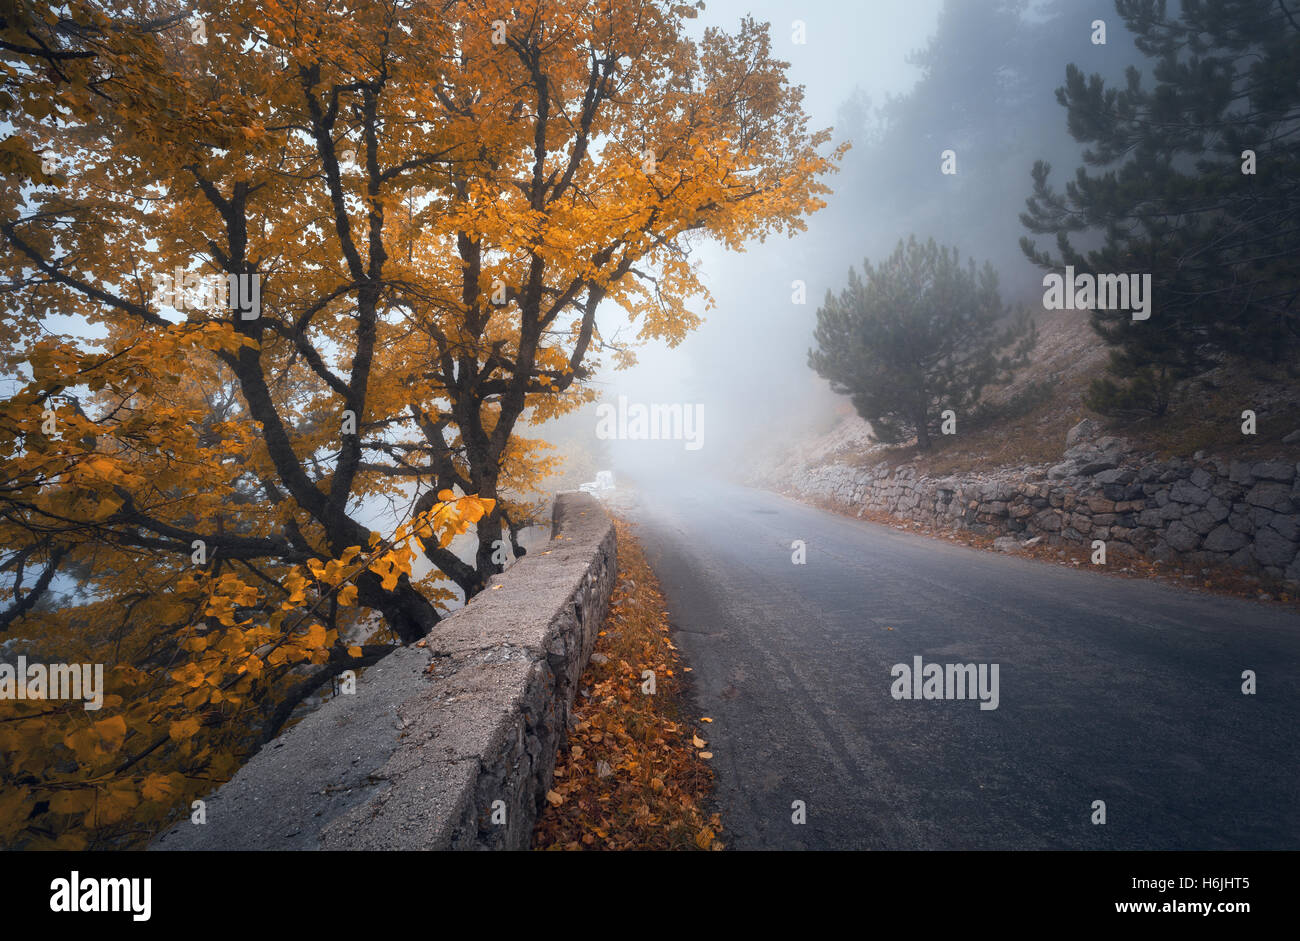 Otoño místico bosque neblinoso con la carretera. Caída misty woods en la niebla. El colorido paisaje con árboles, mountain road, naranja y amarillo Foto de stock